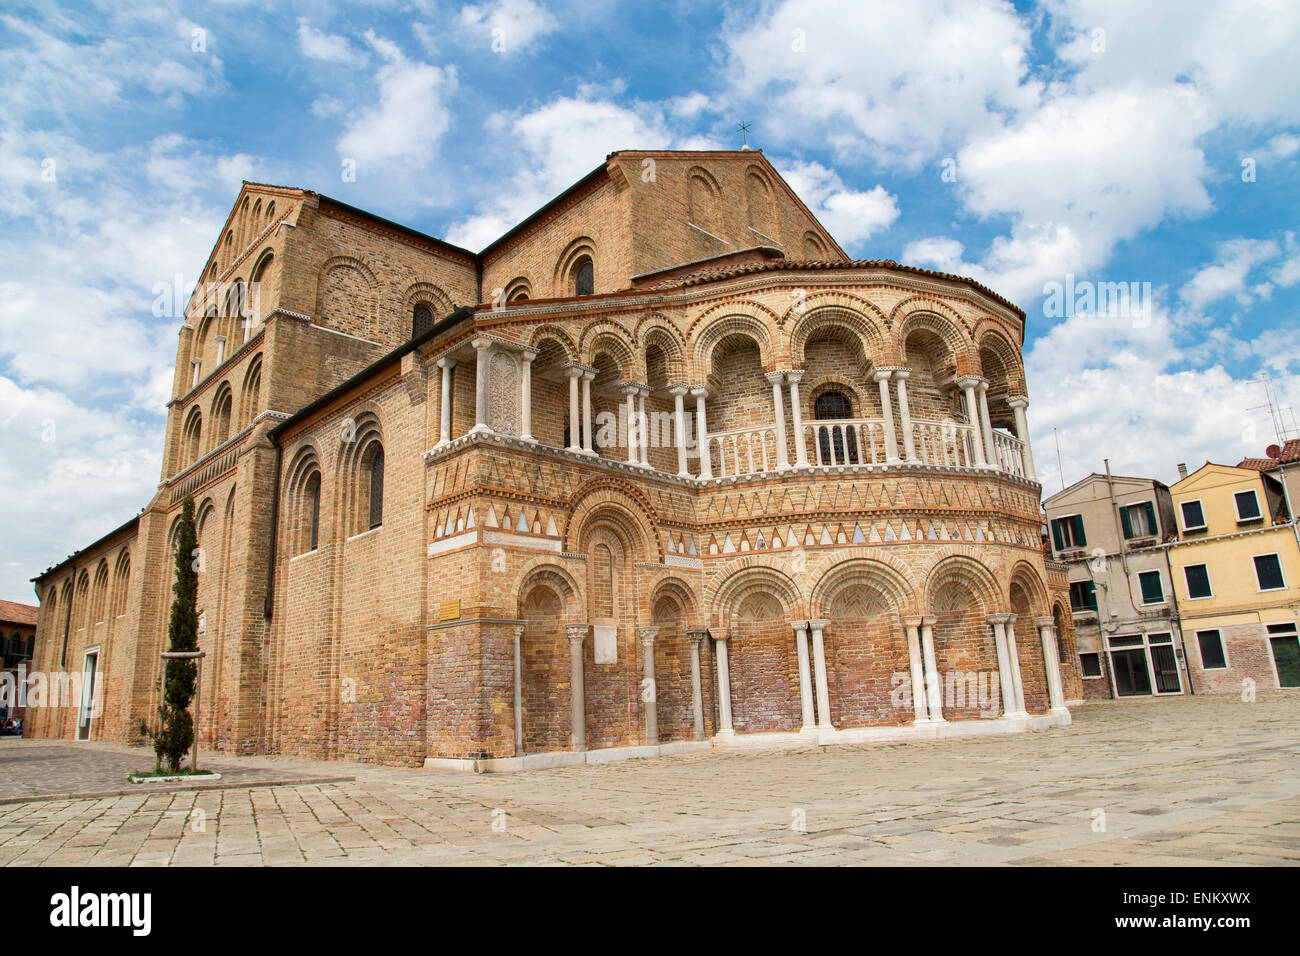 The Church of Santa Maria e San Donato is a religious edifice located in Murano, northern Italy Stock Photo